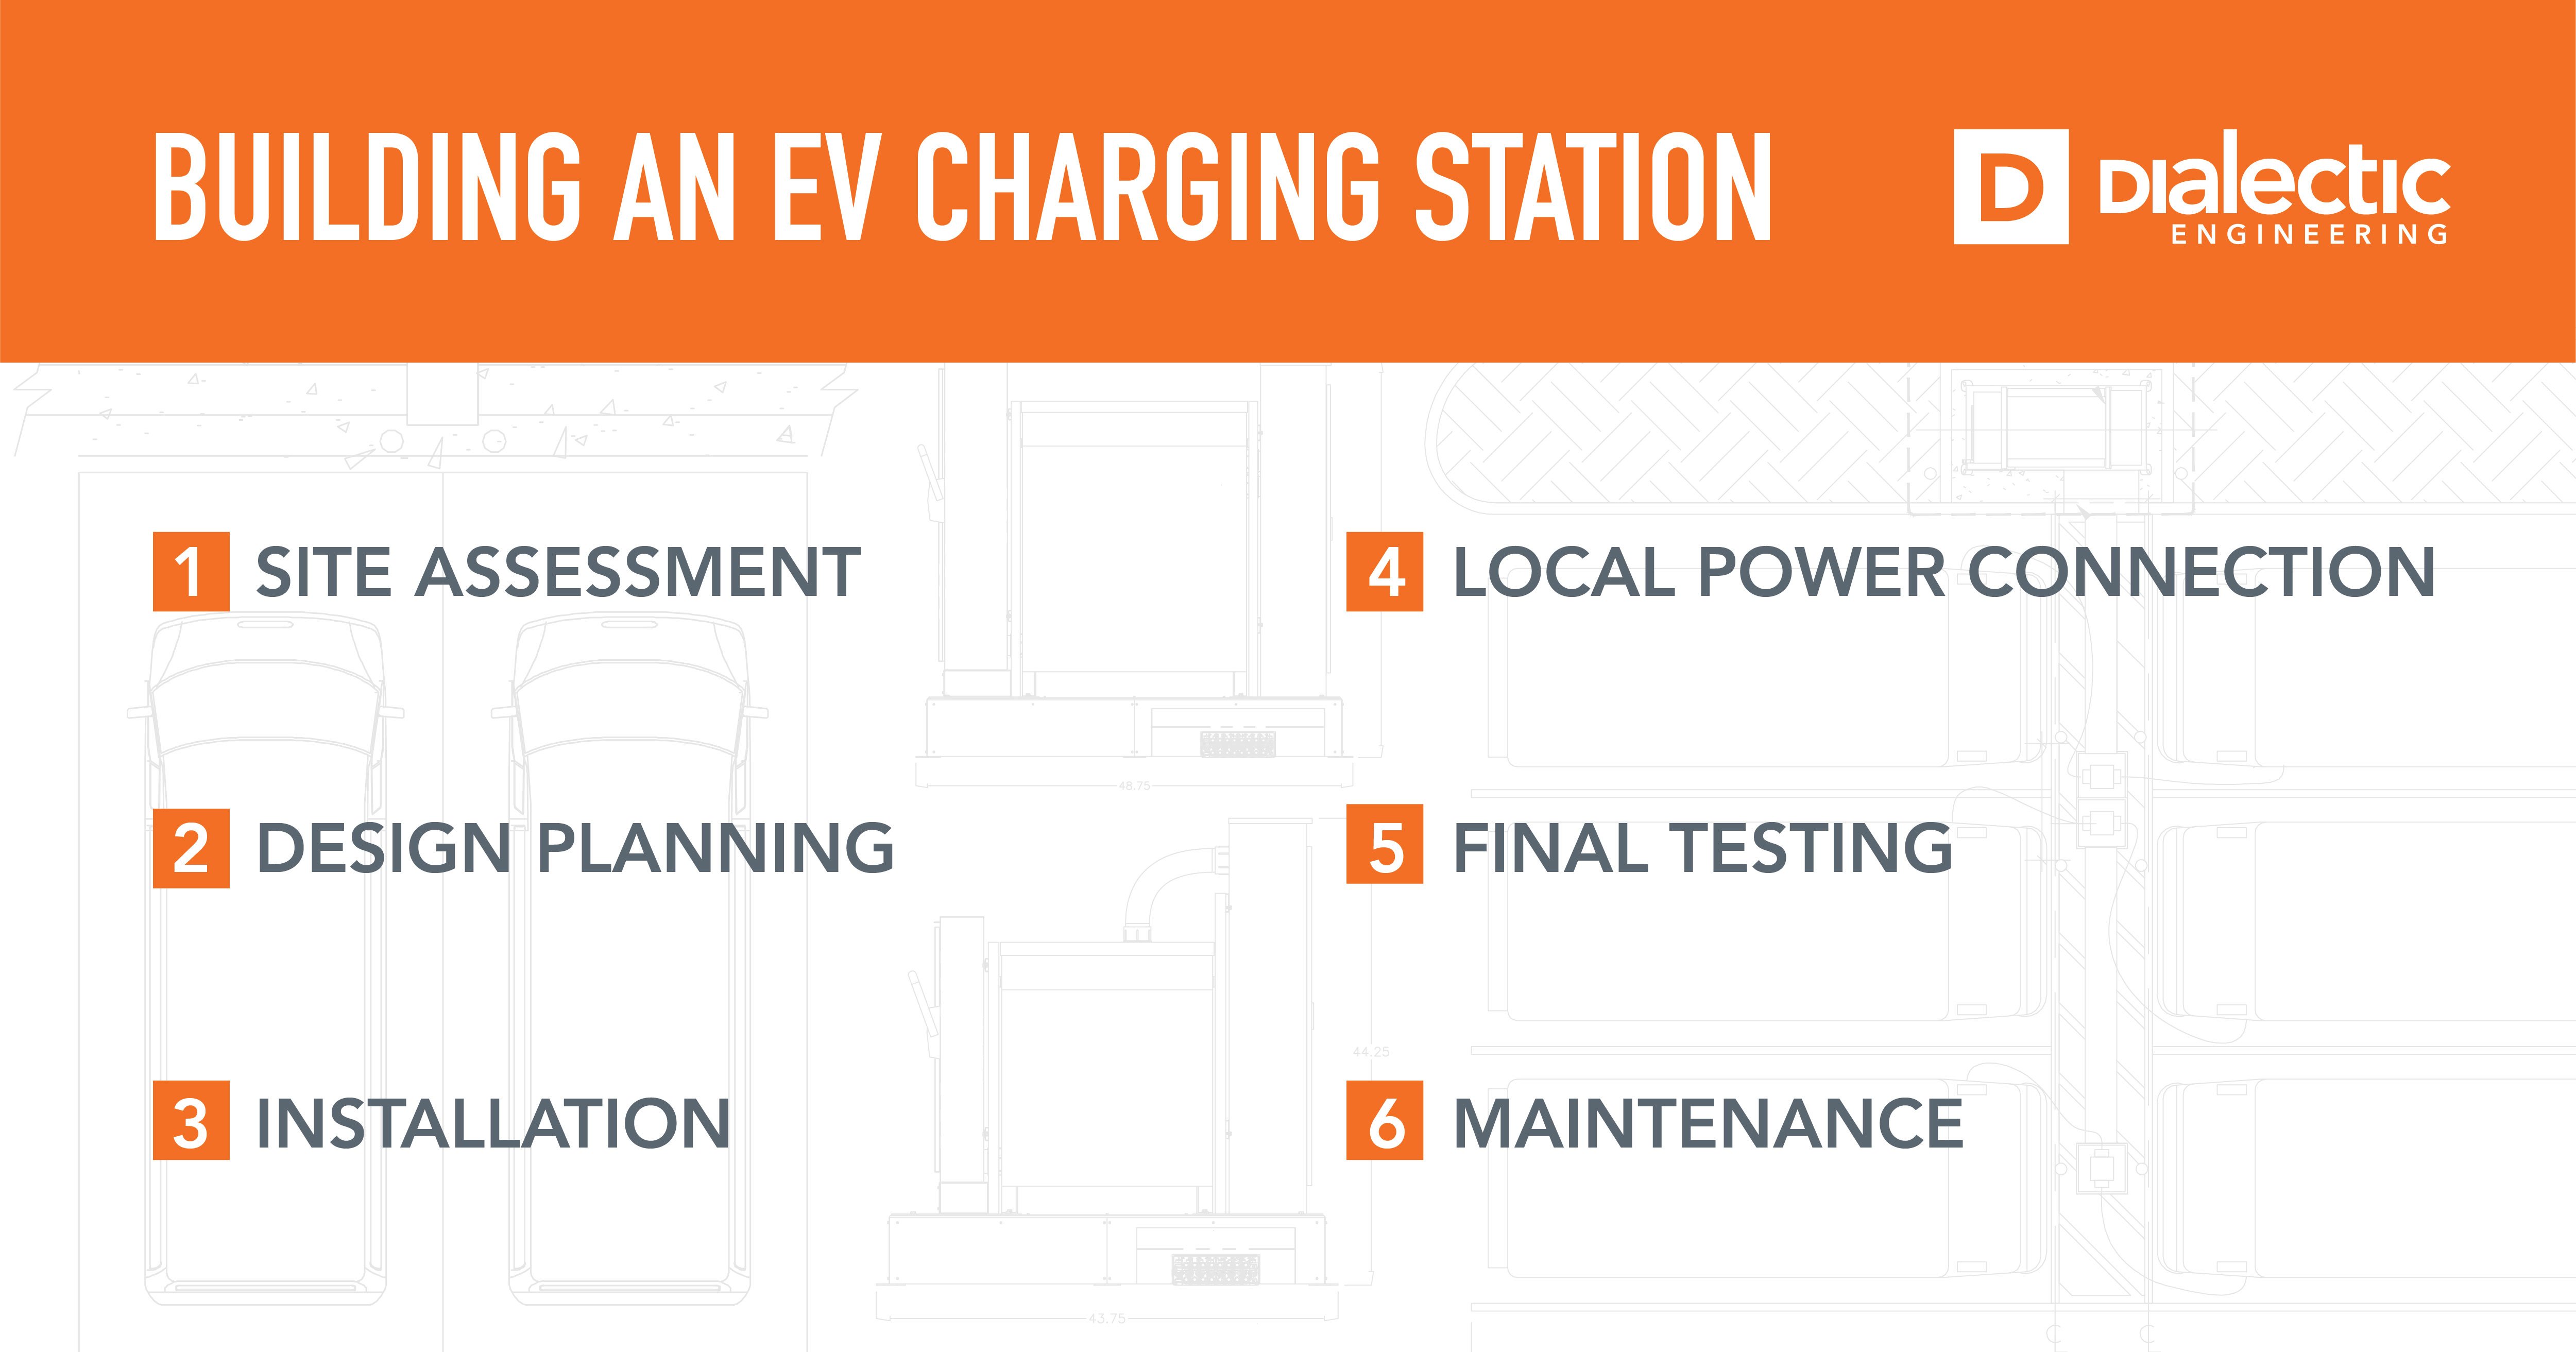 2363 - Blog - Building an EV Charging Station